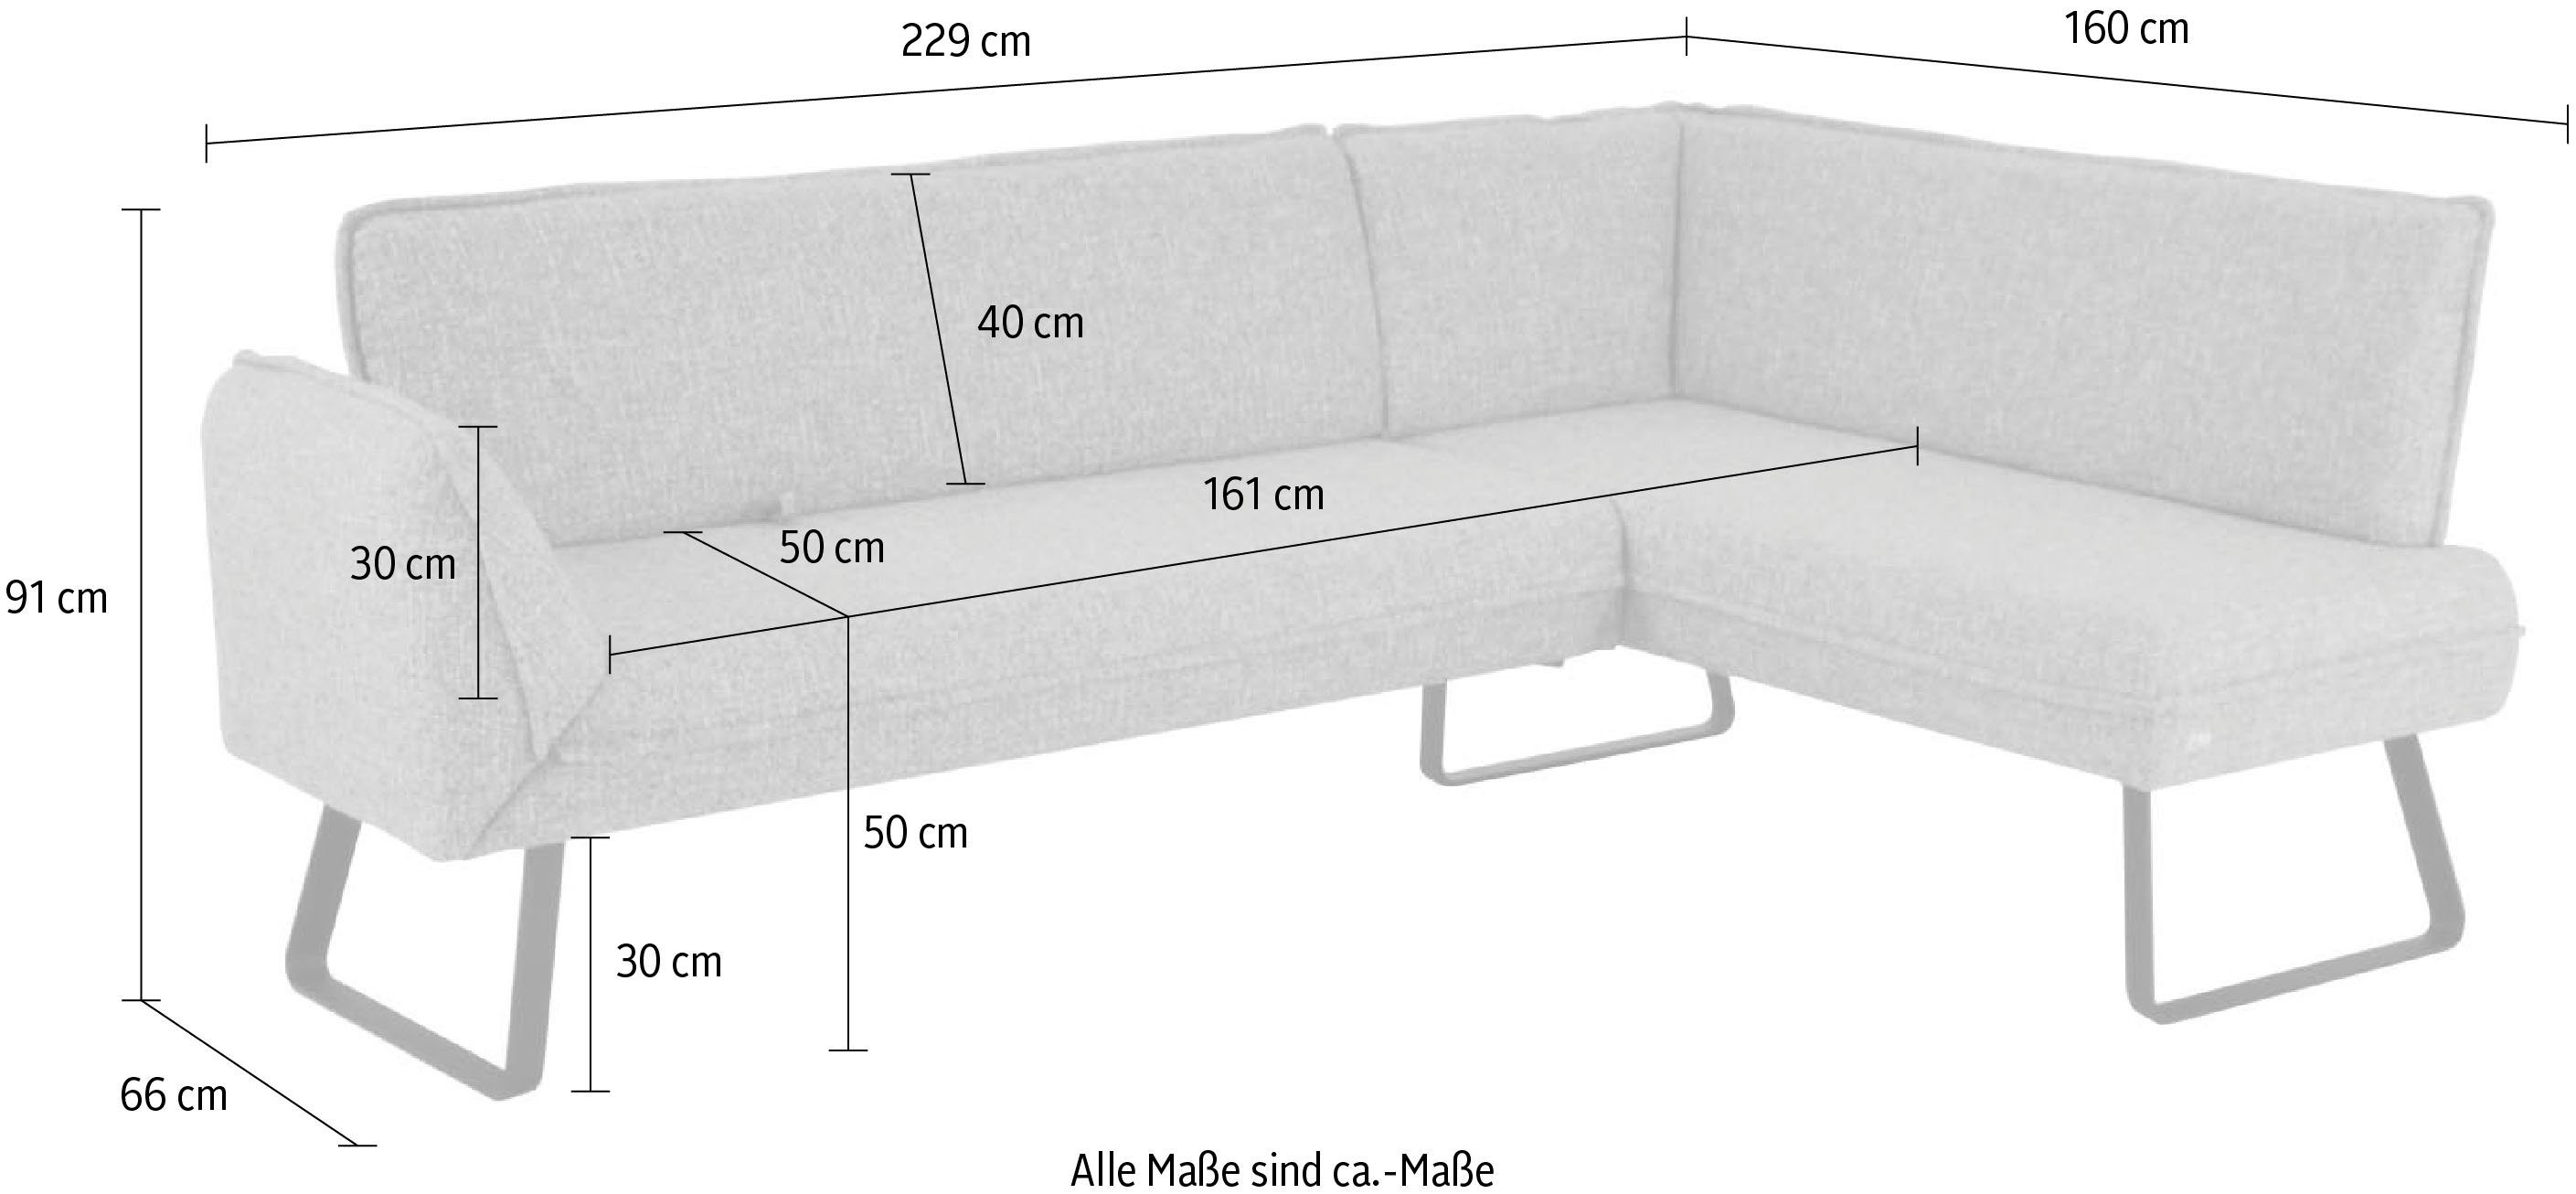 Komfort Wohnen Schenkel am langem Eckbank zur K+W Seitenteilverstellung & mit Drive, Sitzplatzerweiterung